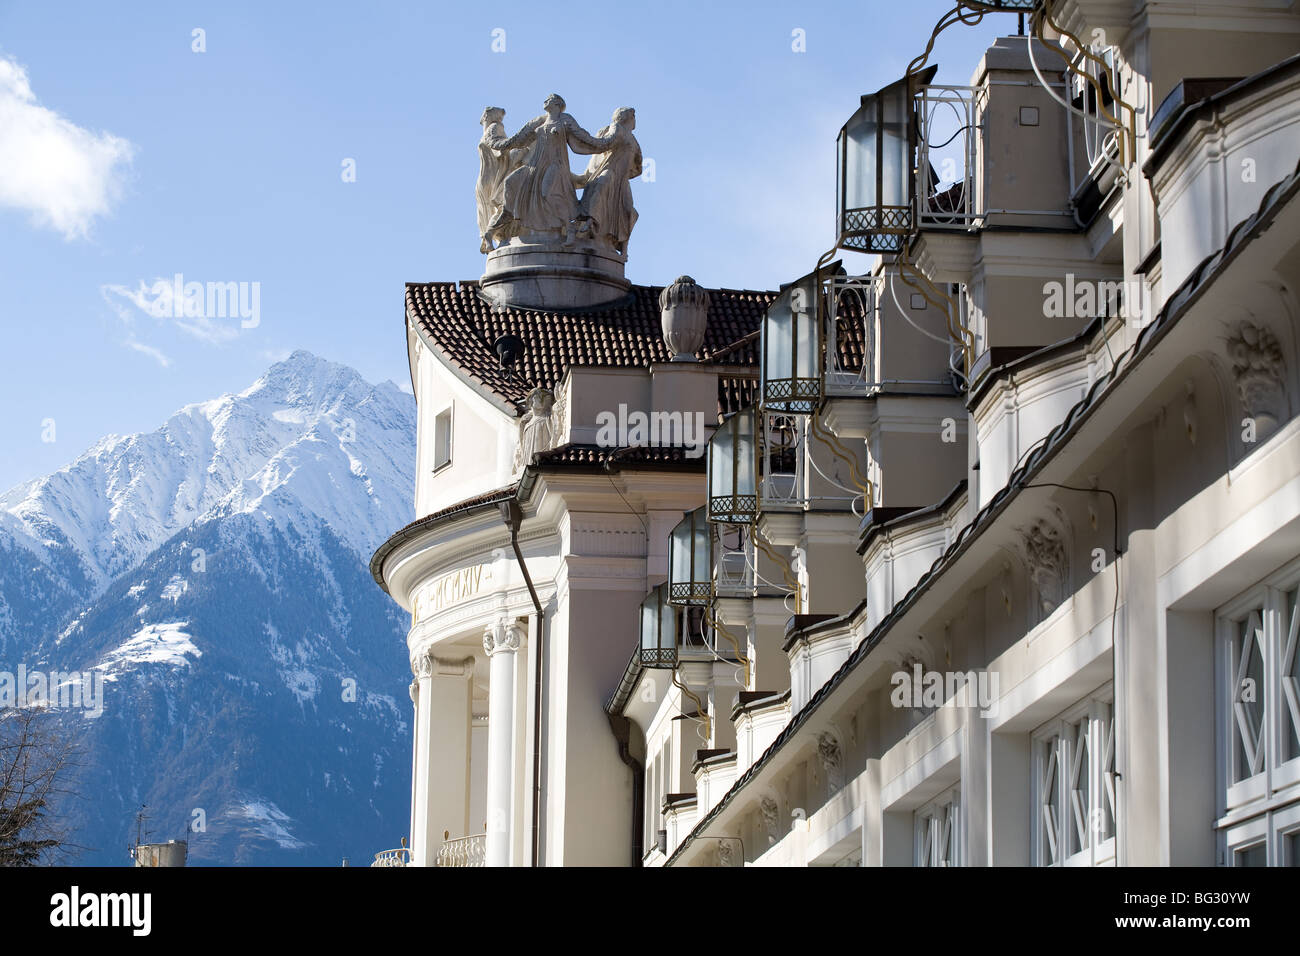 Europe, Italy, Alto Adige, Merano, spa house, statues, especially Stock Photo